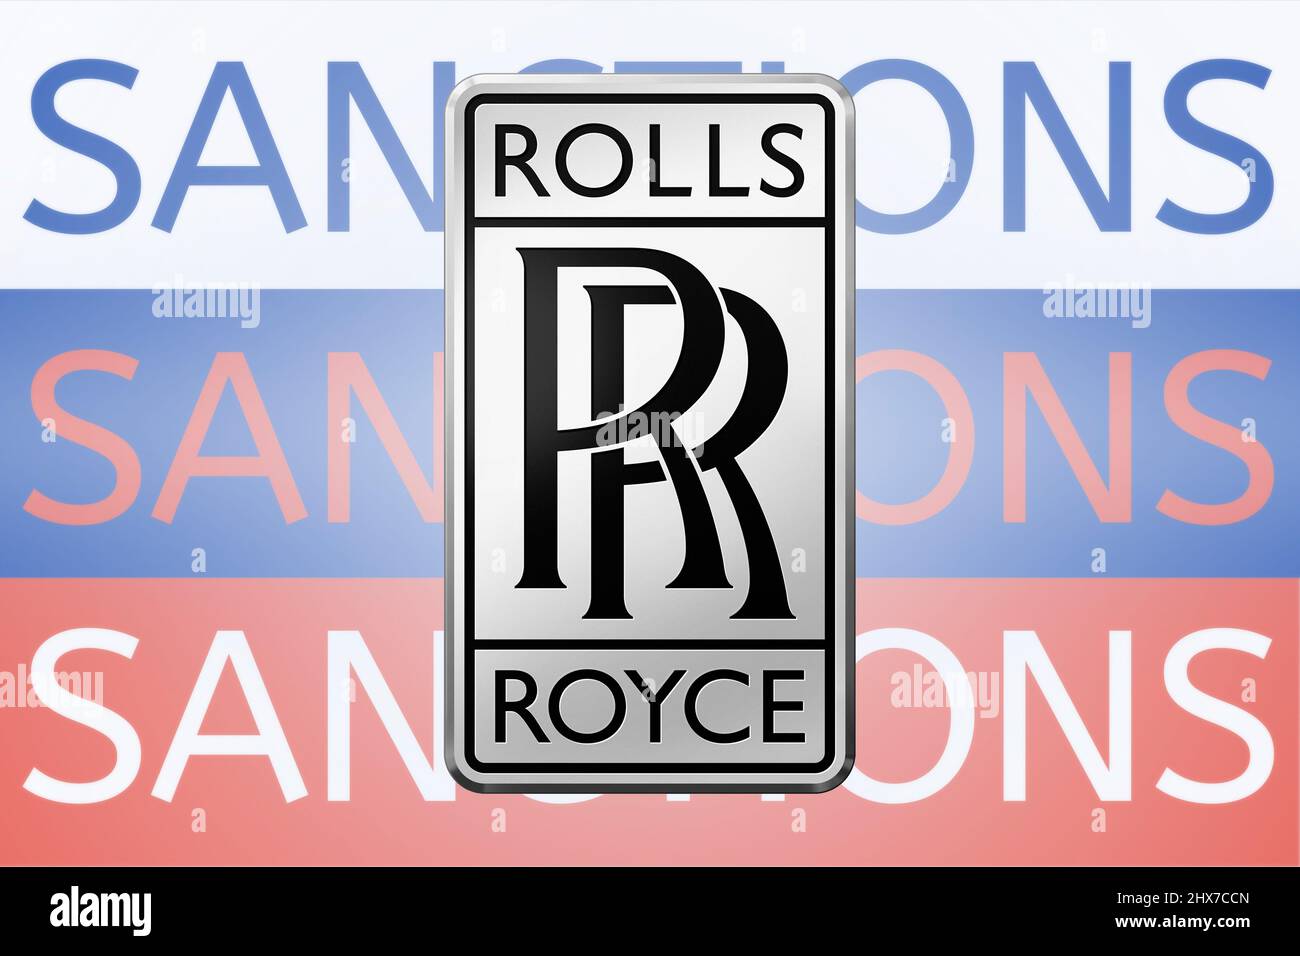 Rolls Royce verhängt Sanktionen gegen Russland wegen seiner Invasion in der Ukraine. März 2022, San Francisco, USA Stockfoto